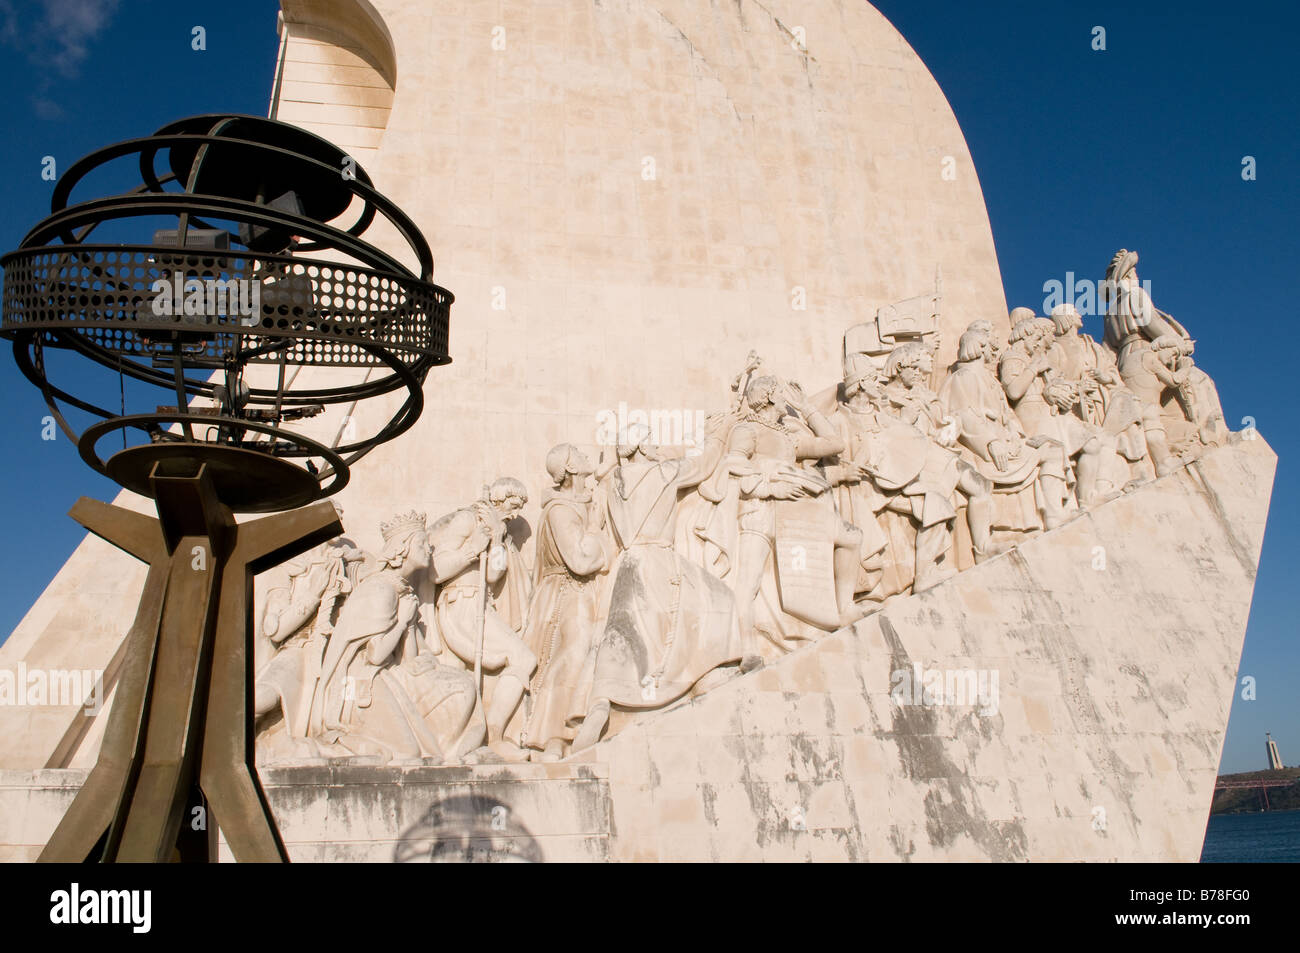 Ein Blick auf die Statue der Entdecker auch bekannt als das Denkmal der Entdeckungen in Lissabon Portugal Stockfoto